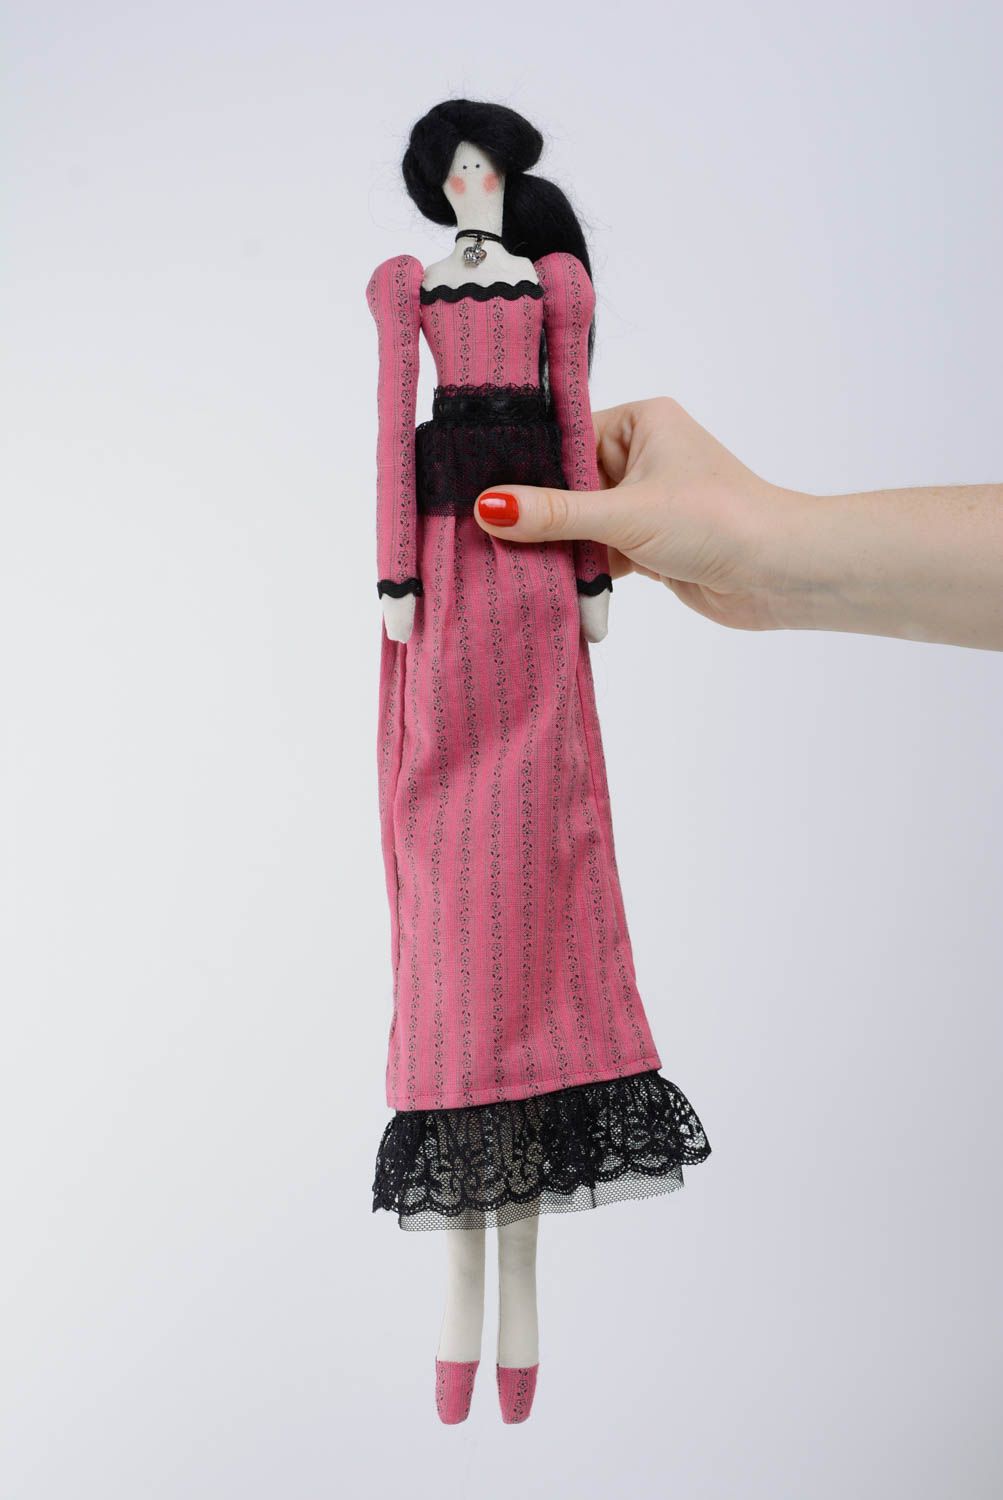 Poupée faite main aux cheveux noirs robe rose taille moyenne belle originale photo 5